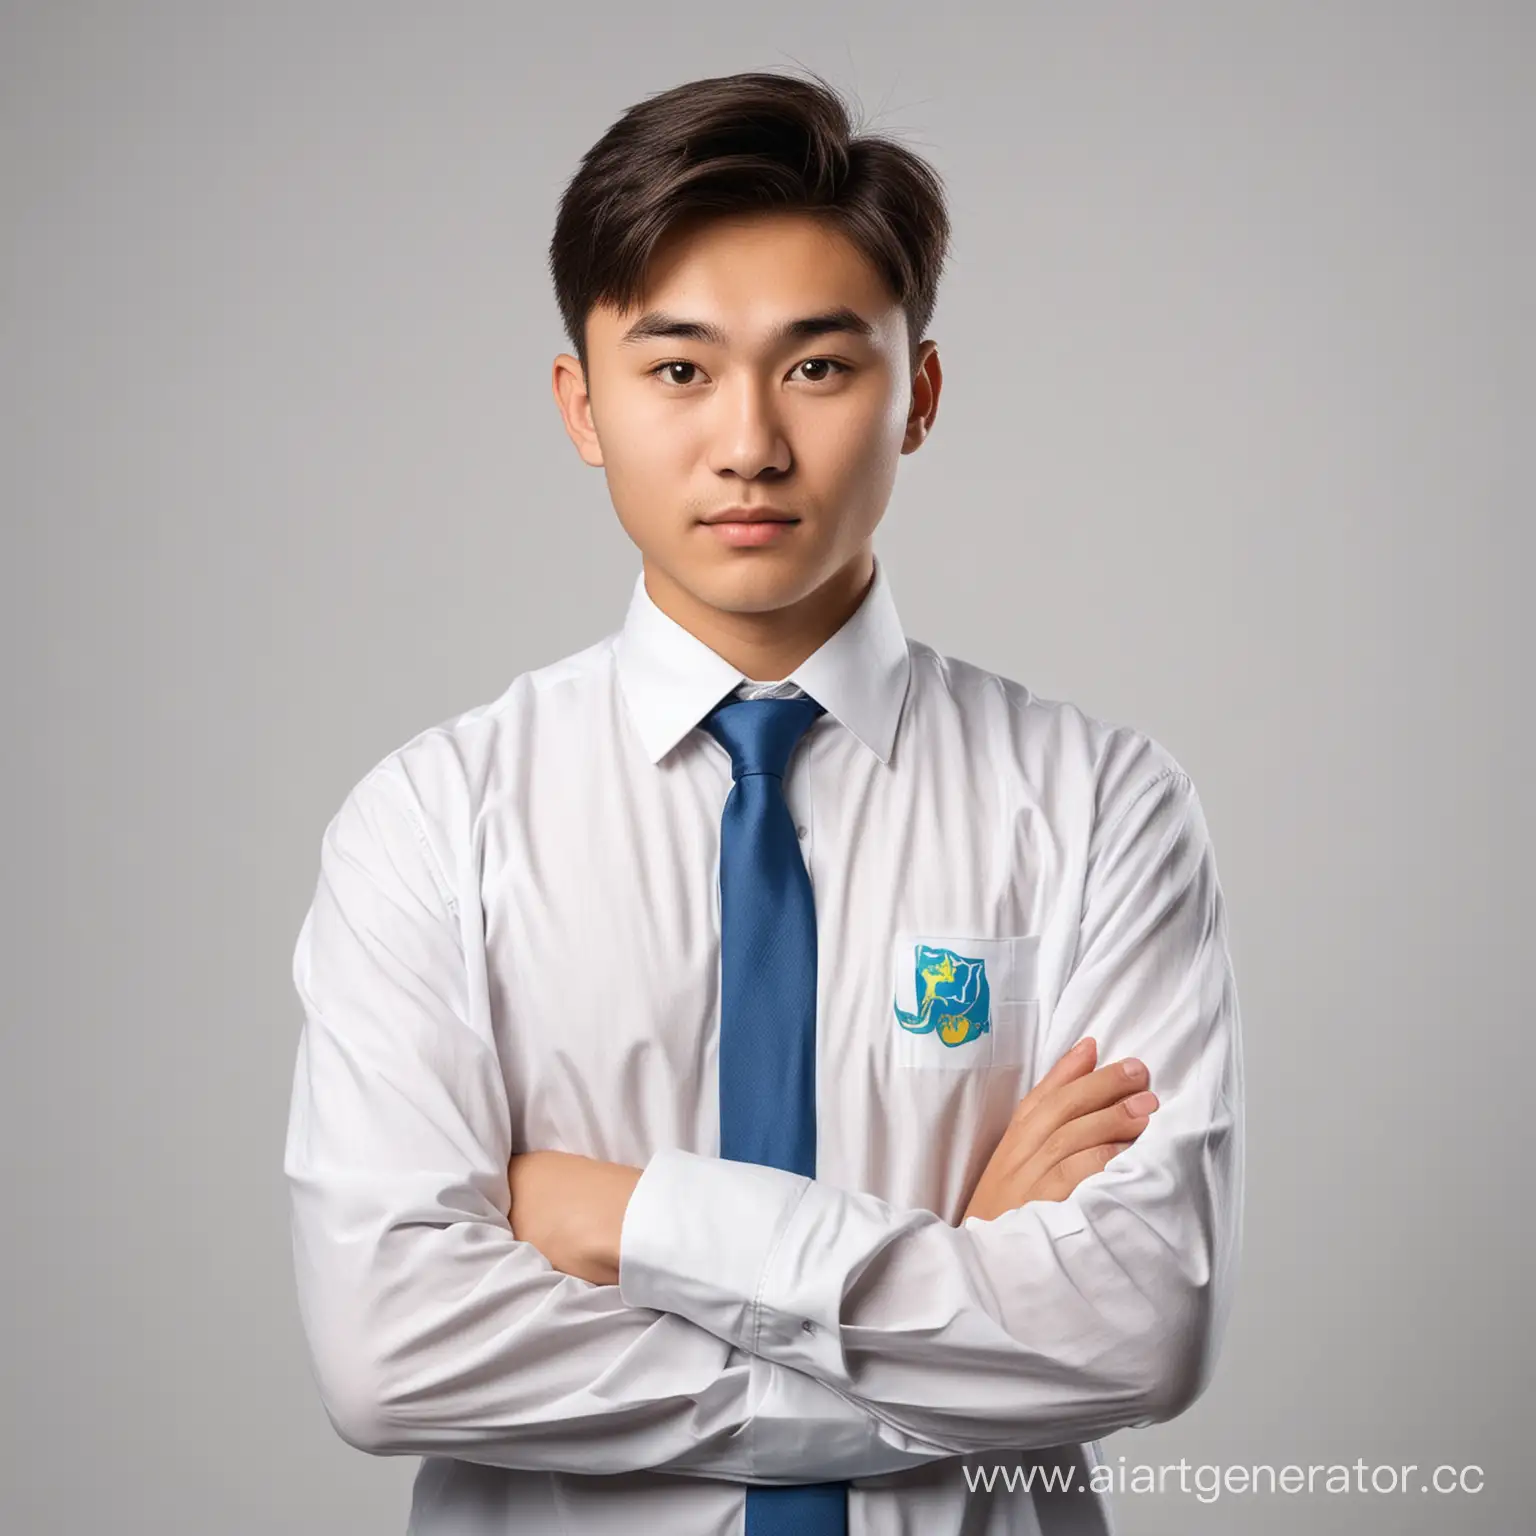 Юноша 18-19 лет студент казахской внешности, хочет стать айтишником. Стоит в белом фоне 